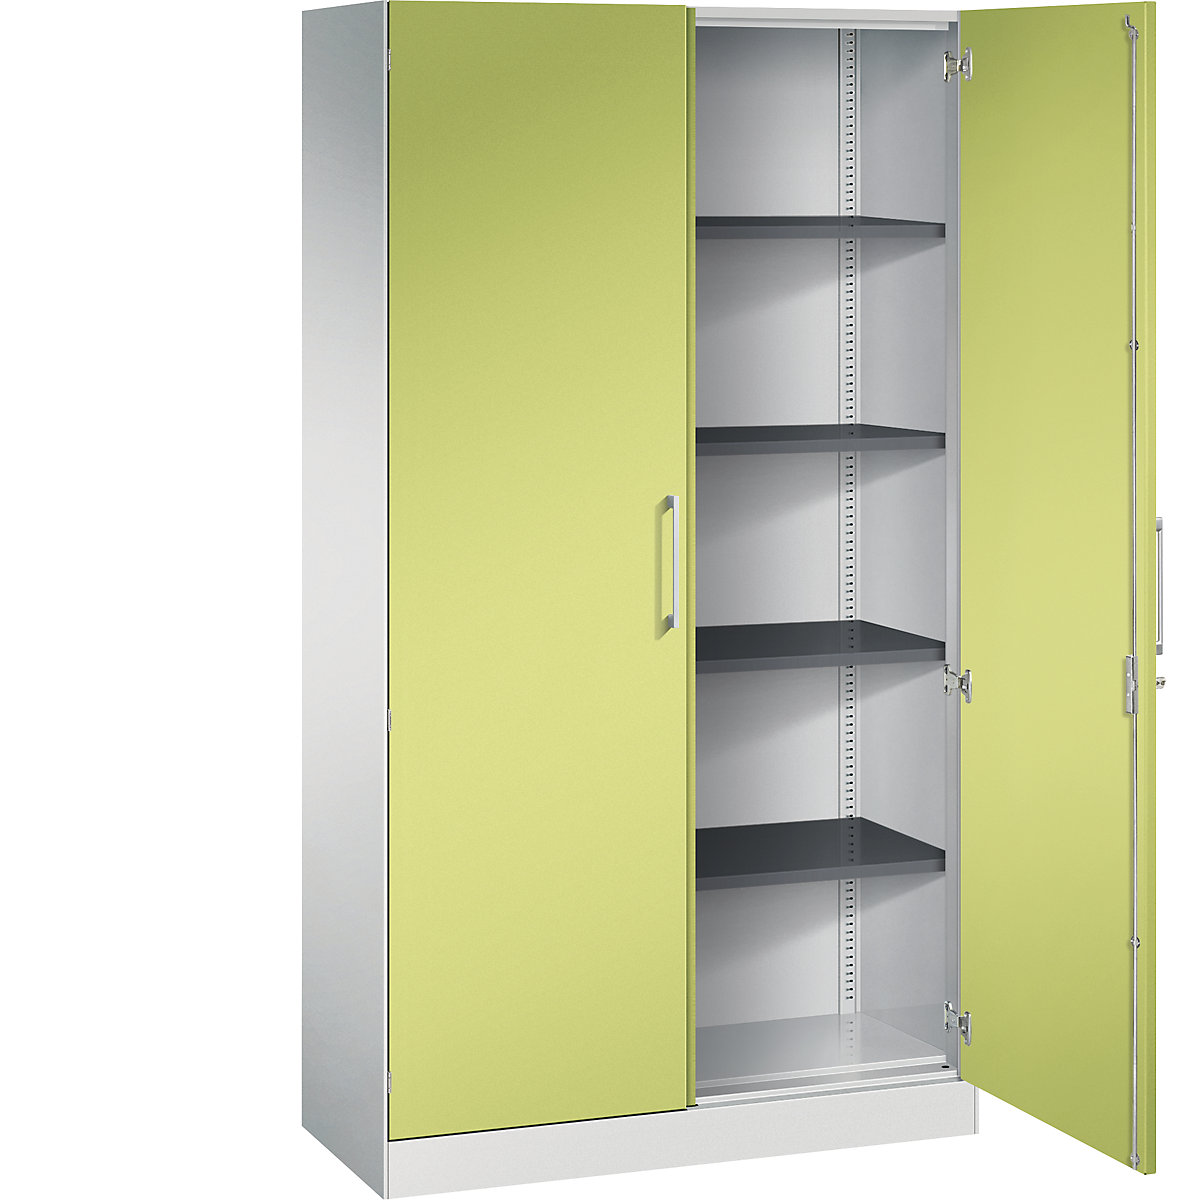 ASISTO double door cupboard, height 1980 mm – C+P, width 1000 mm, 4 shelves, light grey/viridian green-18